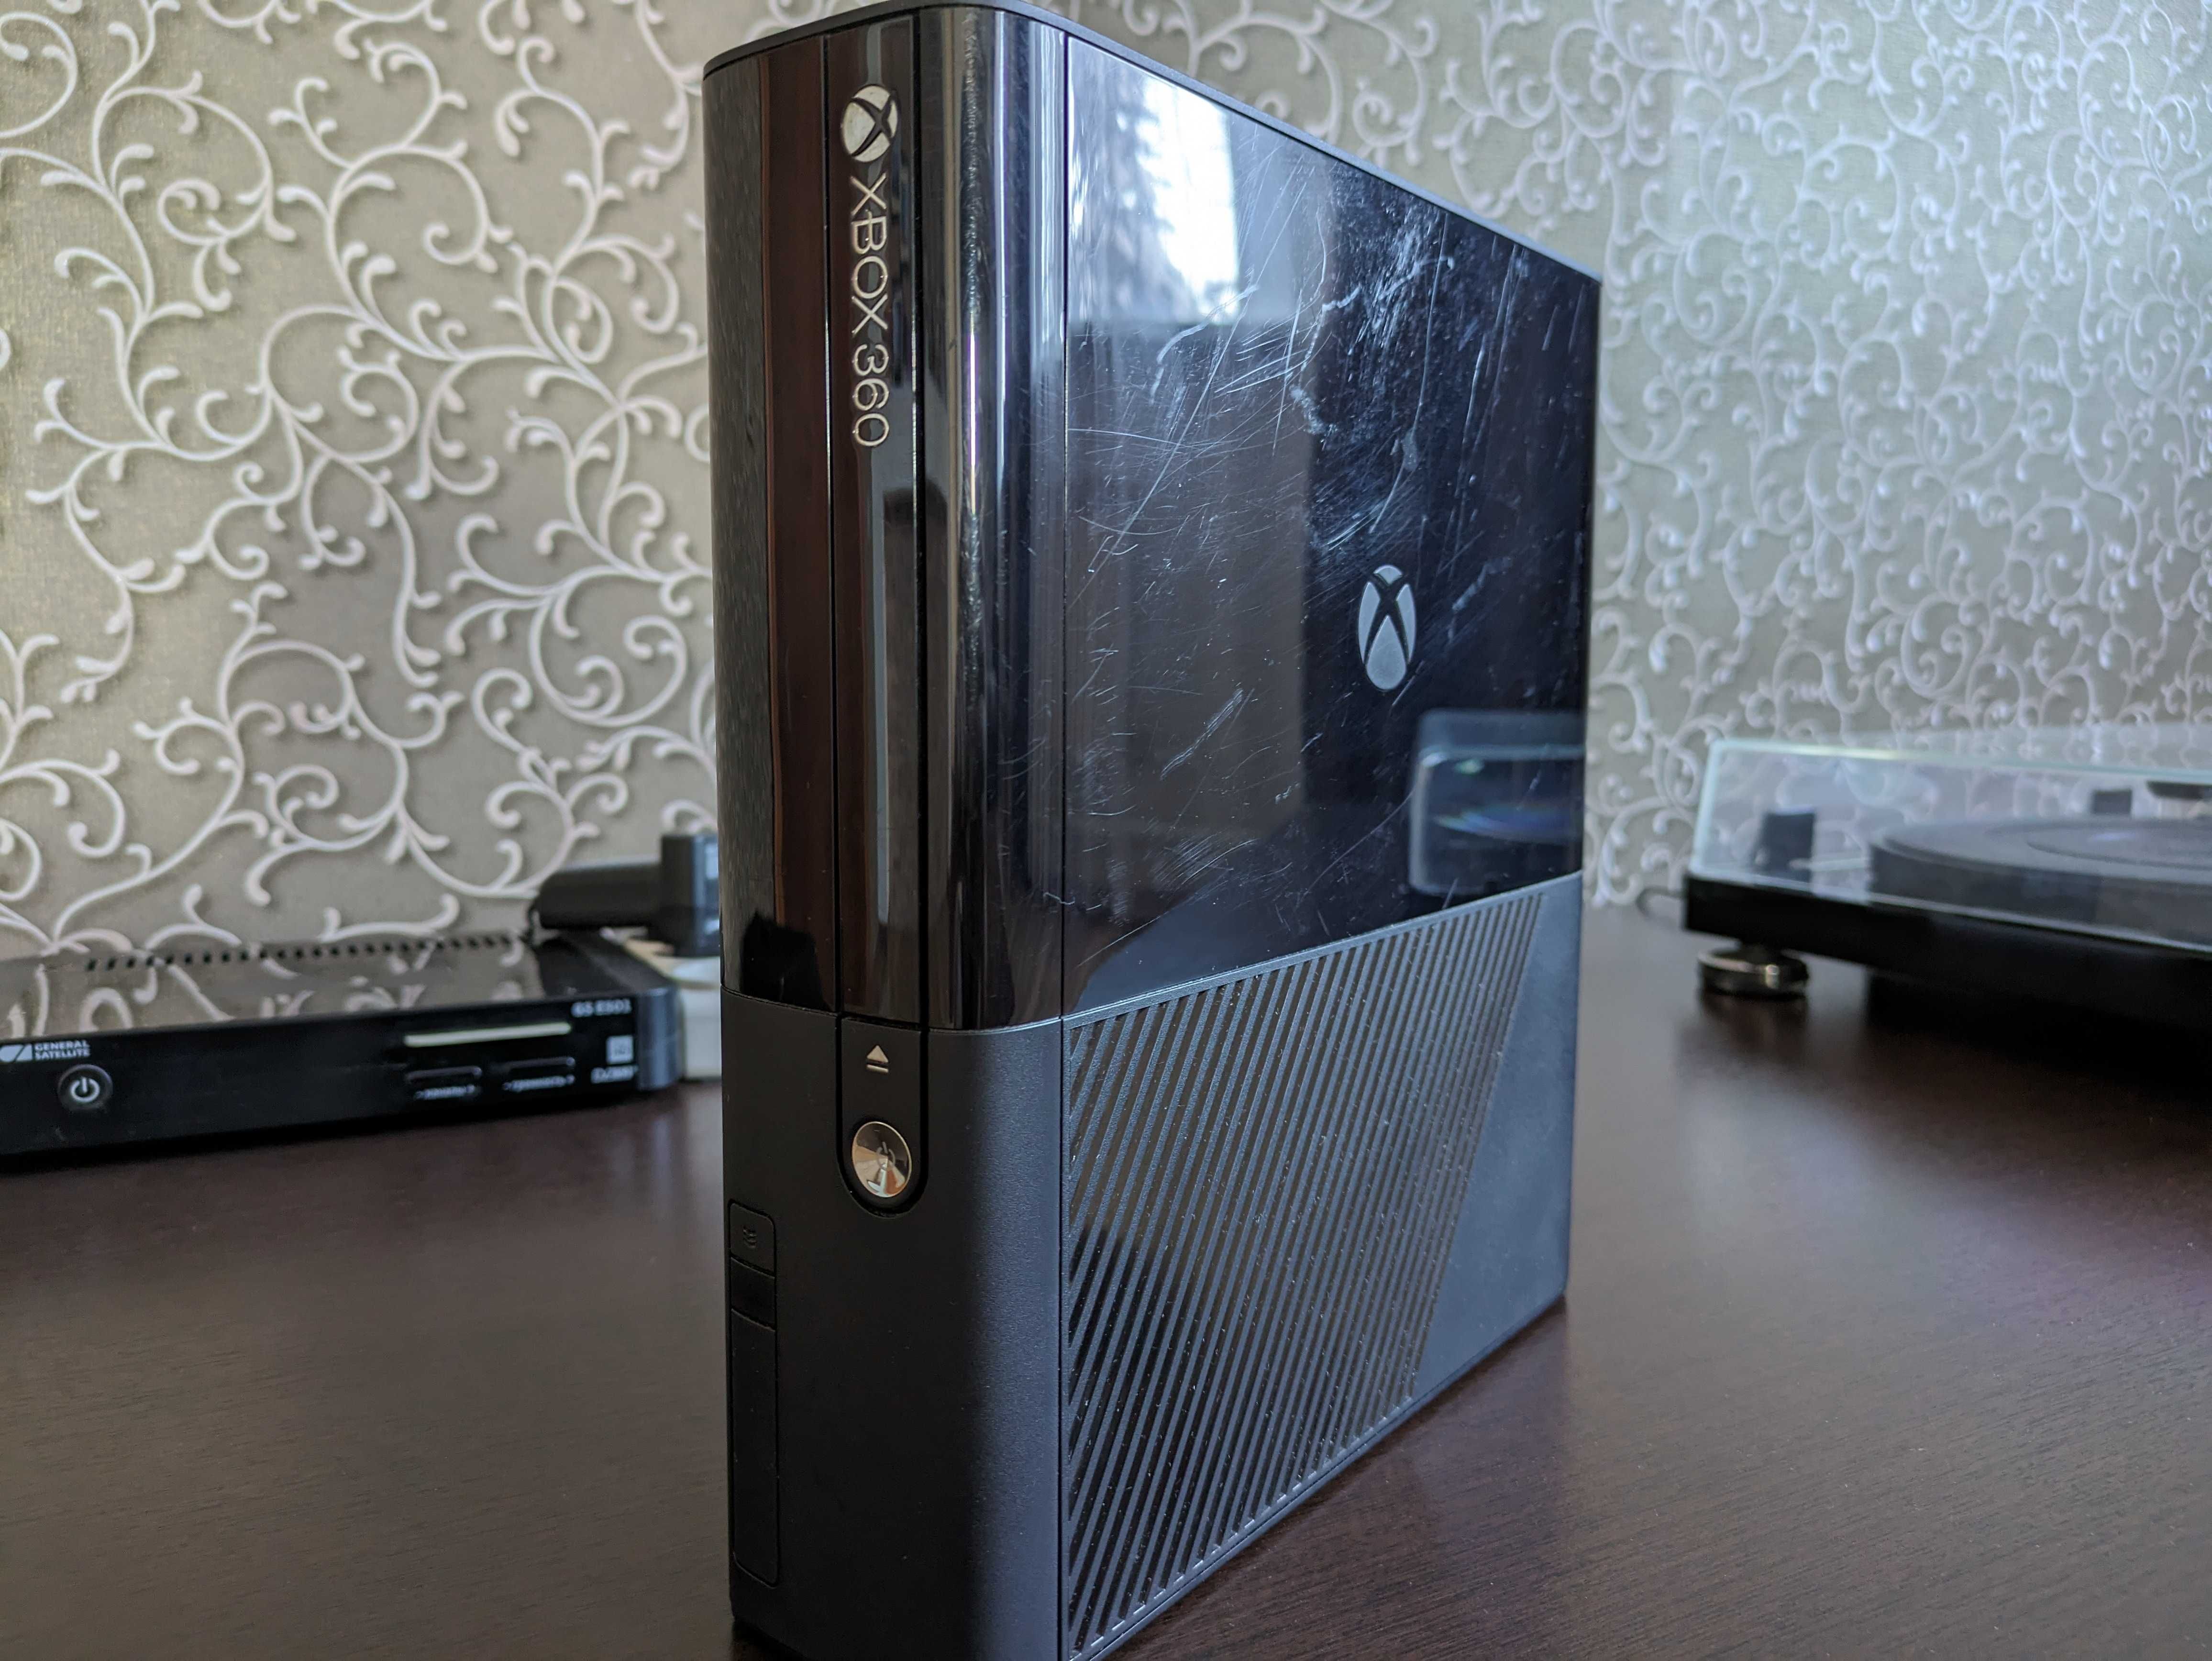 Xbox 360 E 250GB